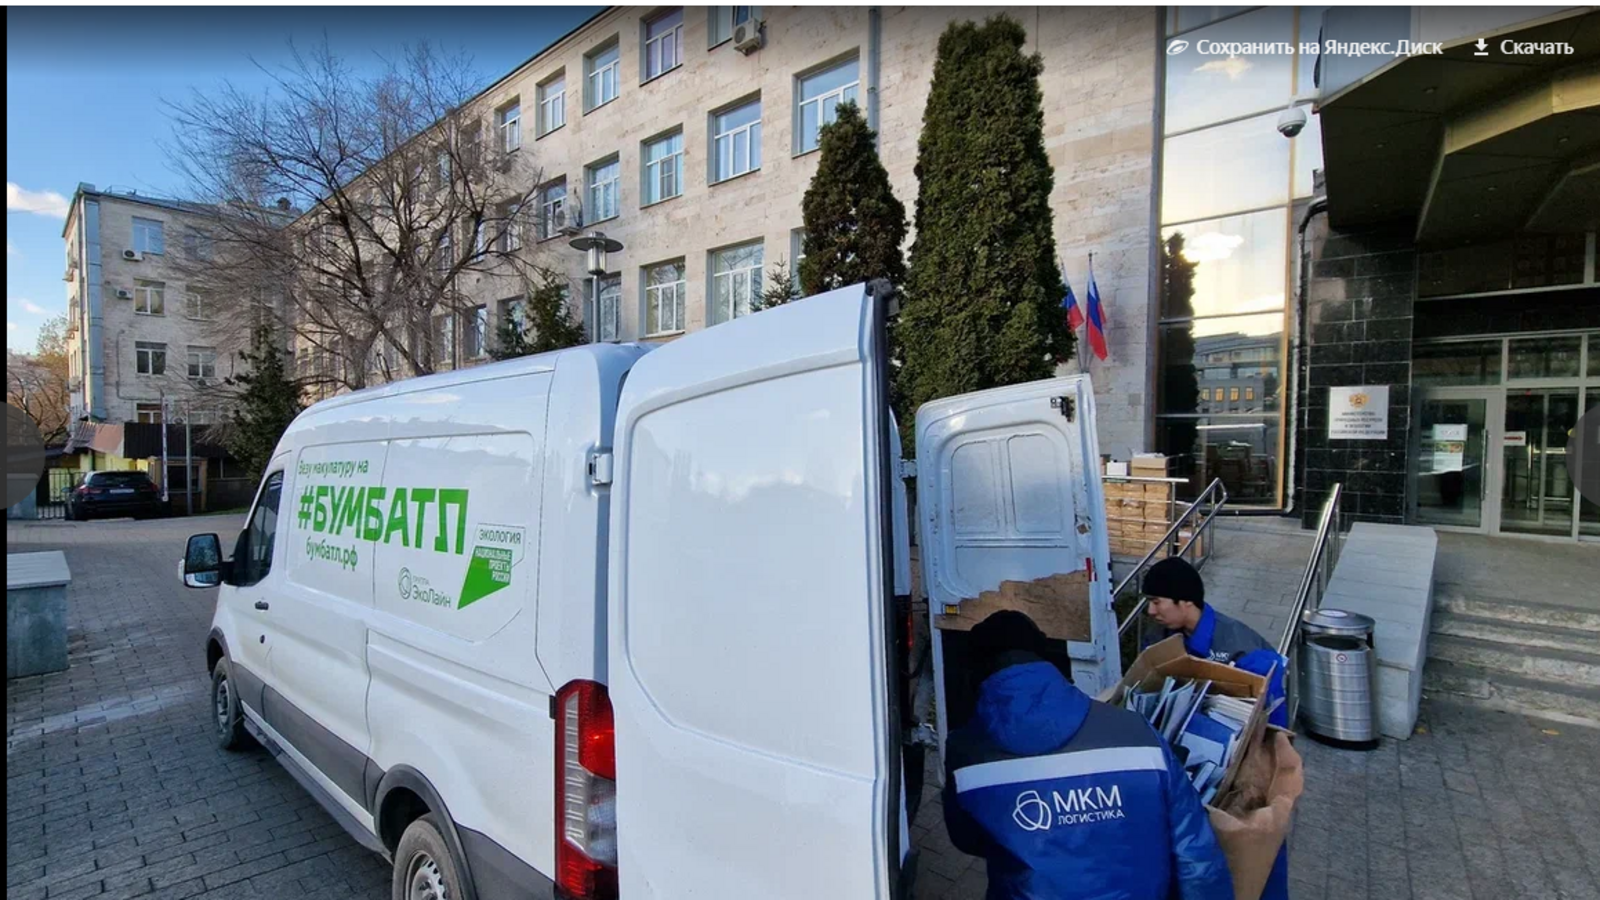 #БумБатл - 16 тонн макулатуры сдали в Республике Башкортостан в рамках всероссийской акции